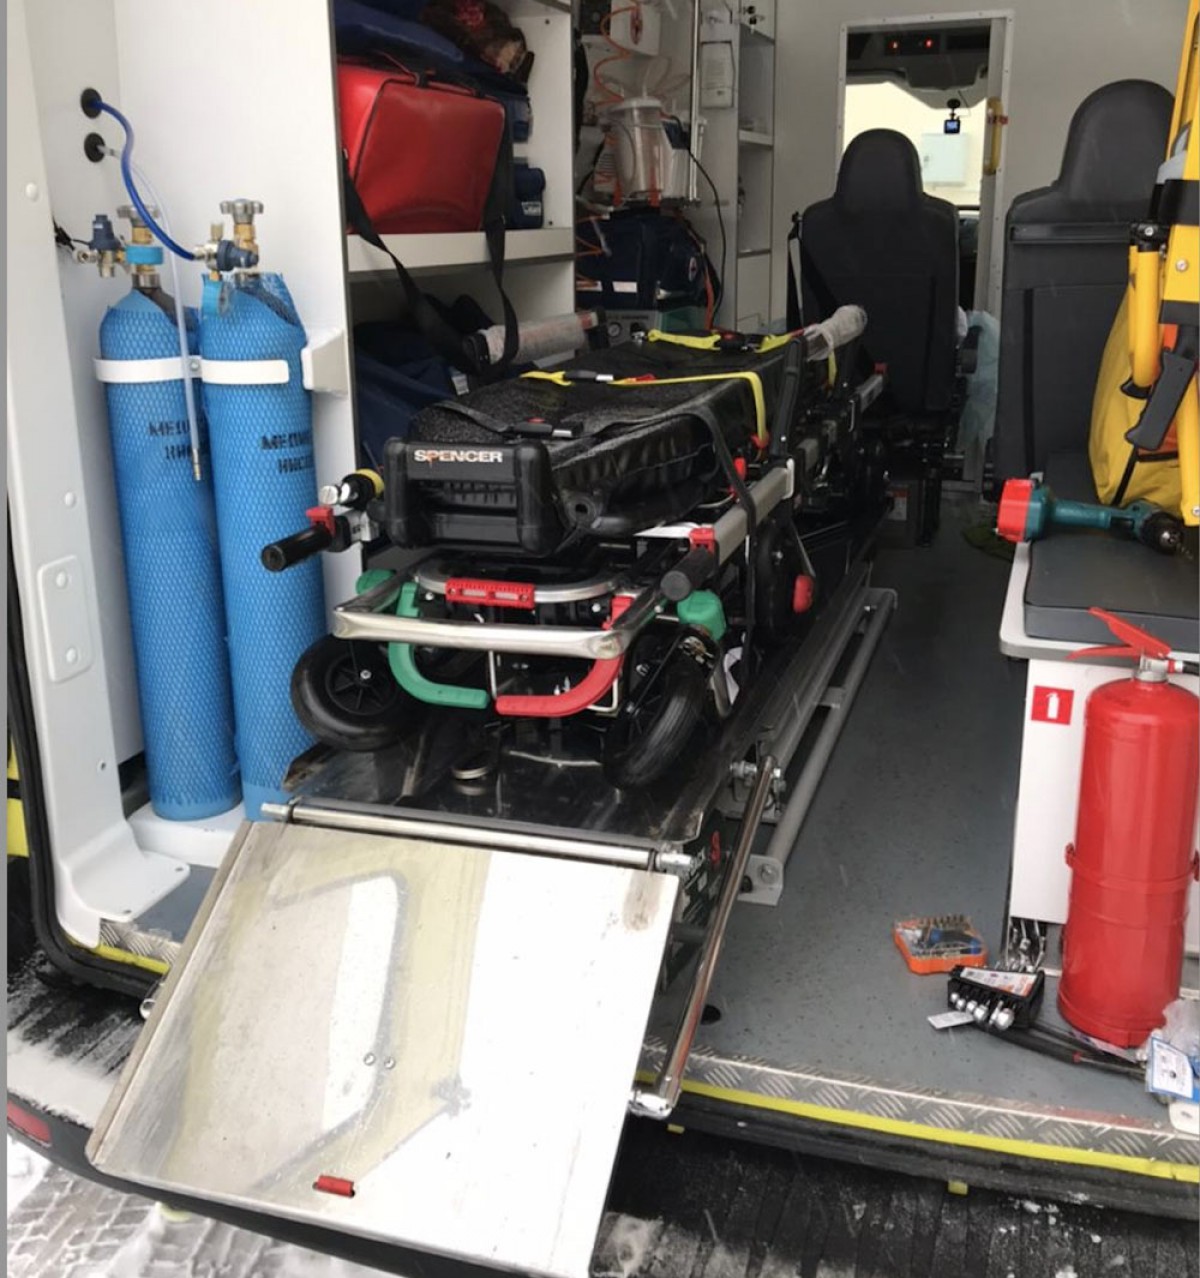 Машины скорой помощи оборудованы всем необходимым для спасения жизни человека